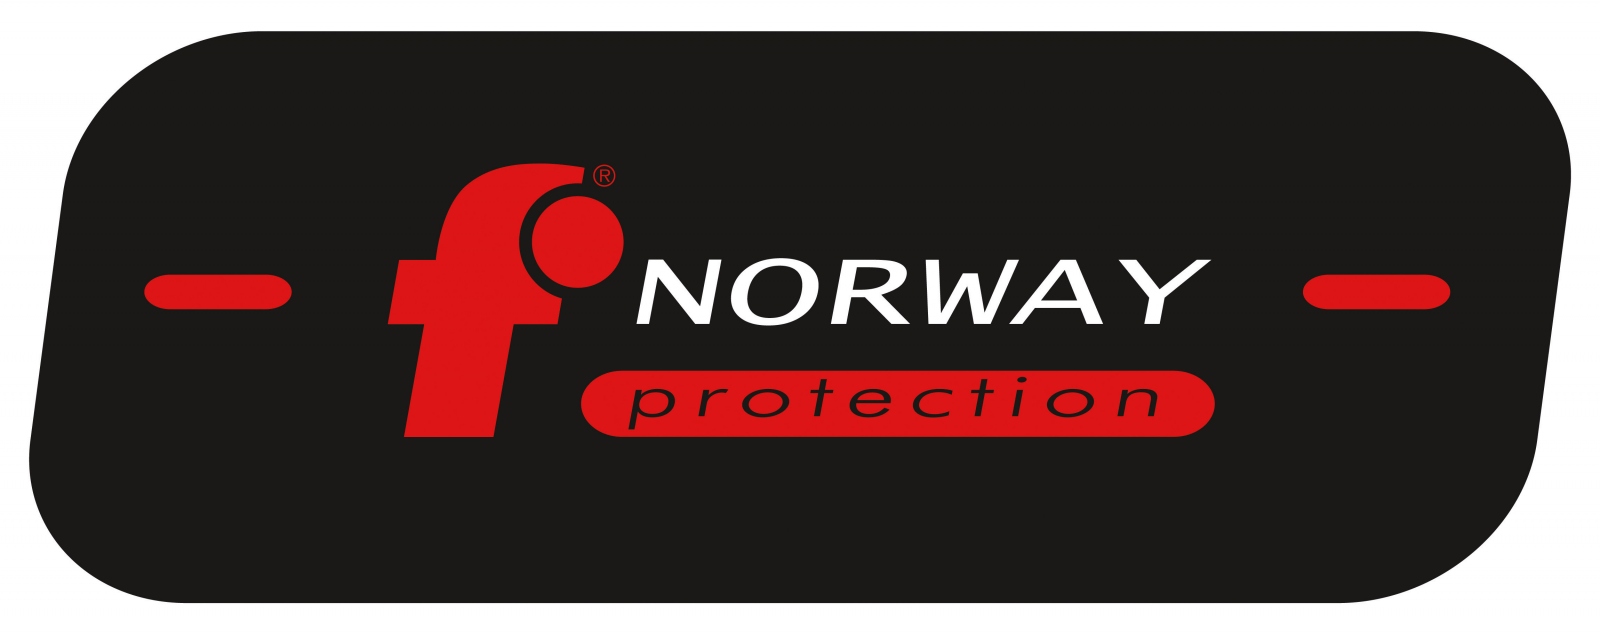 pics/Feldtmann 2016/Körperschutz 01/norway-protection-logo.jpg